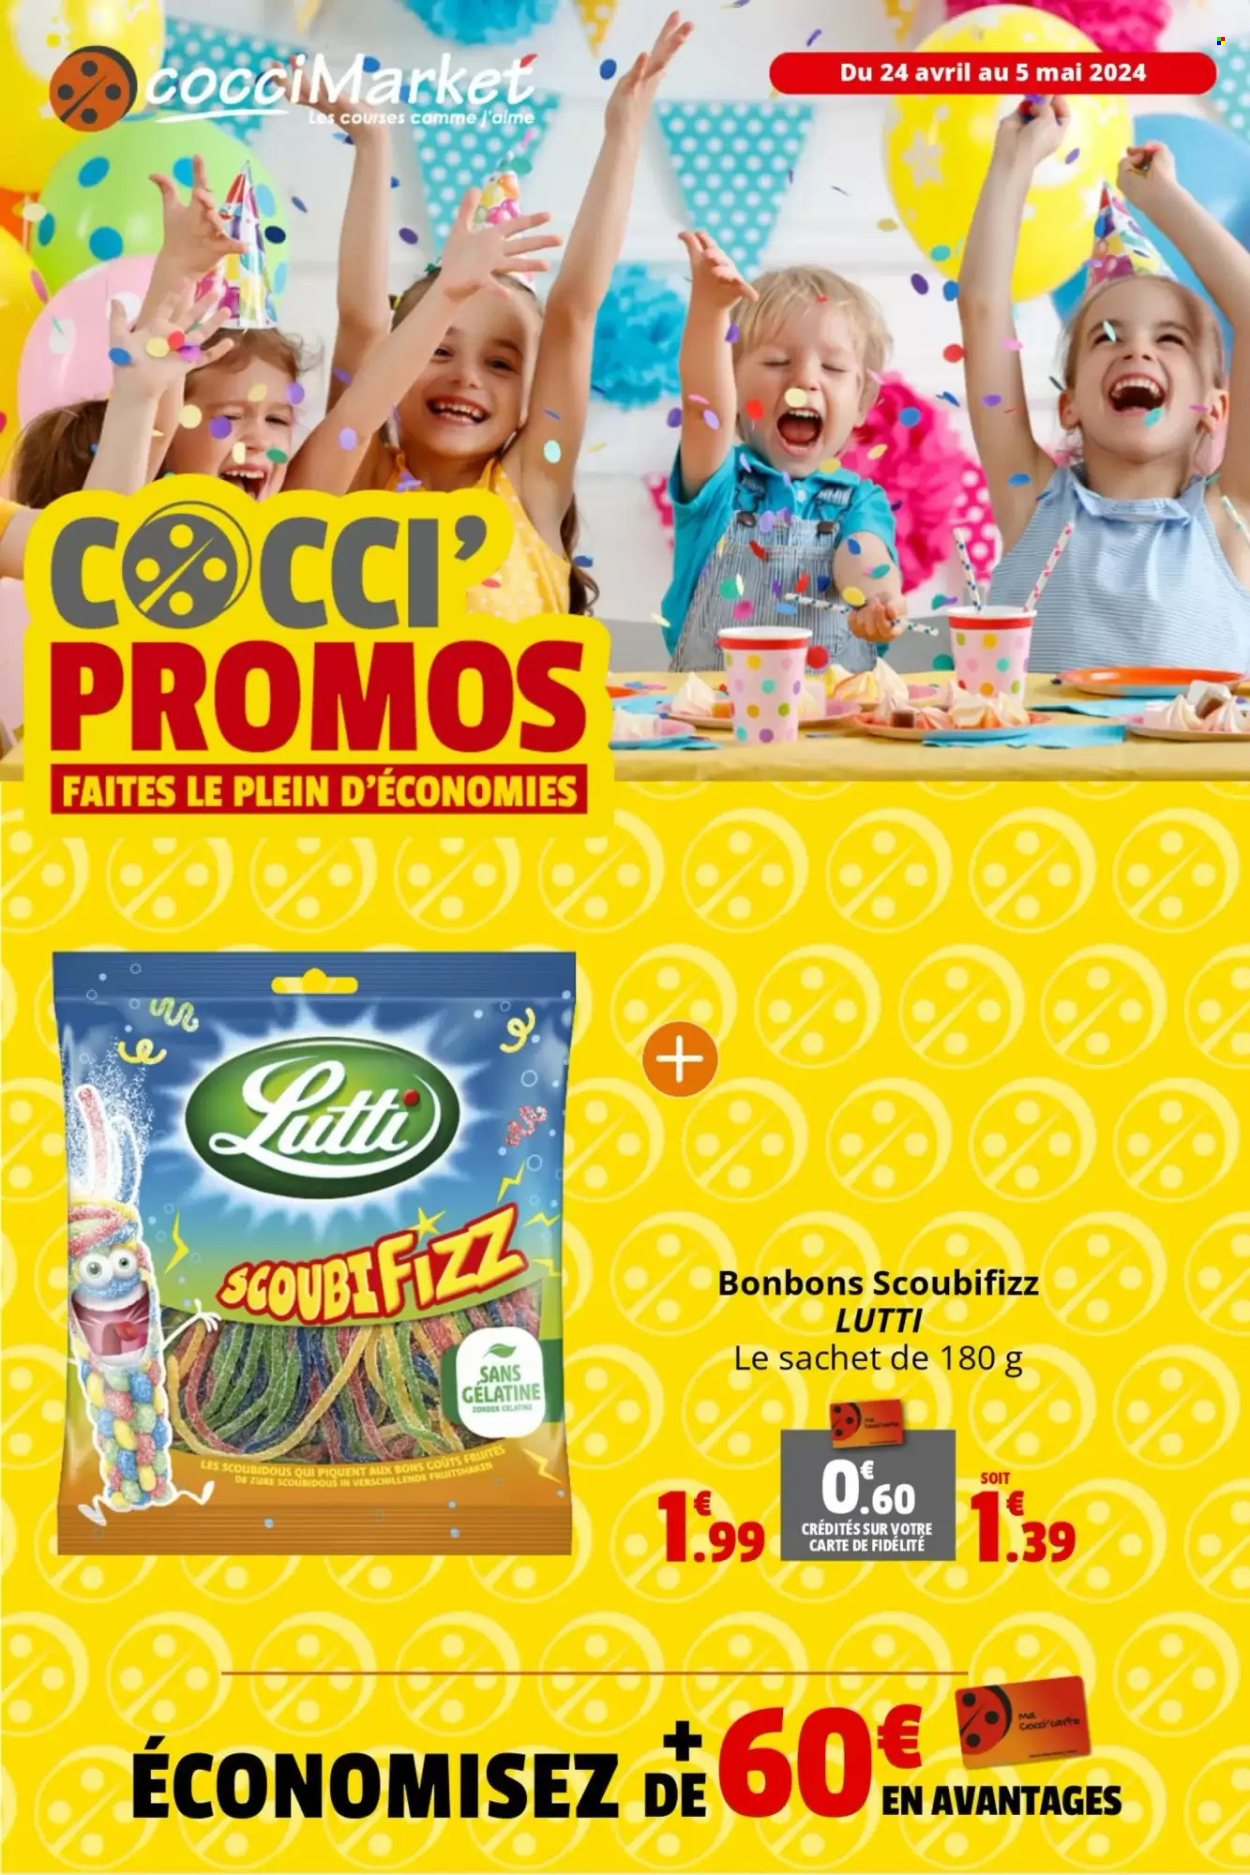 thumbnail - Catalogue CocciMarket - 24/04/2024 - 05/05/2024 - Produits soldés - bonbons, Lutti, gélatine. Page 1.